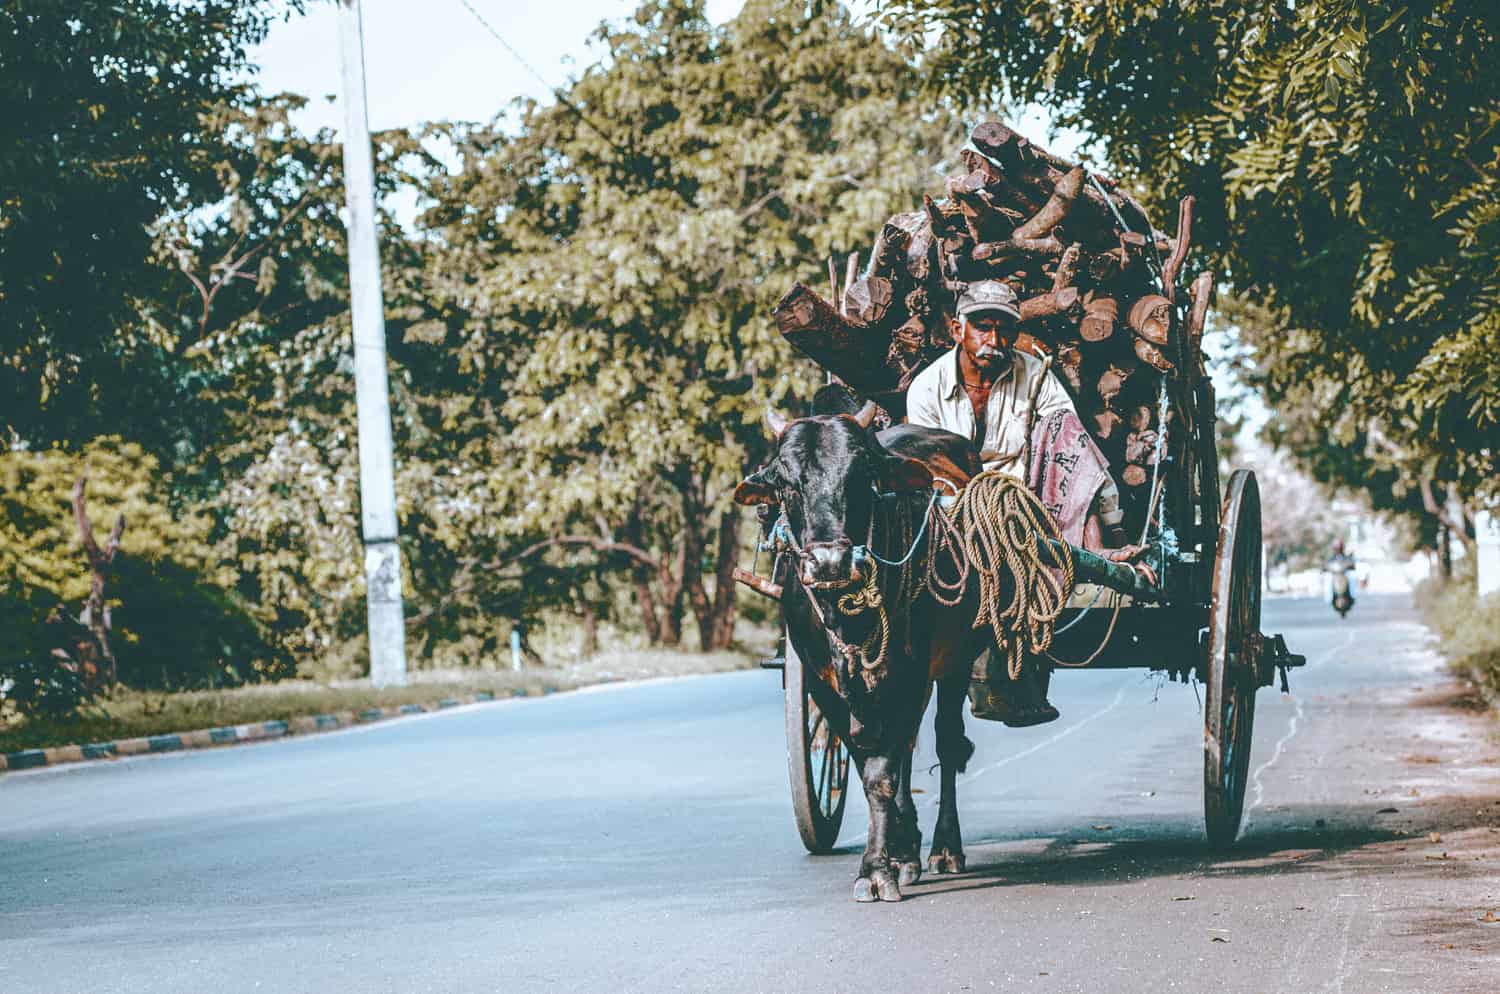 Bullock cart in Sri Lanka